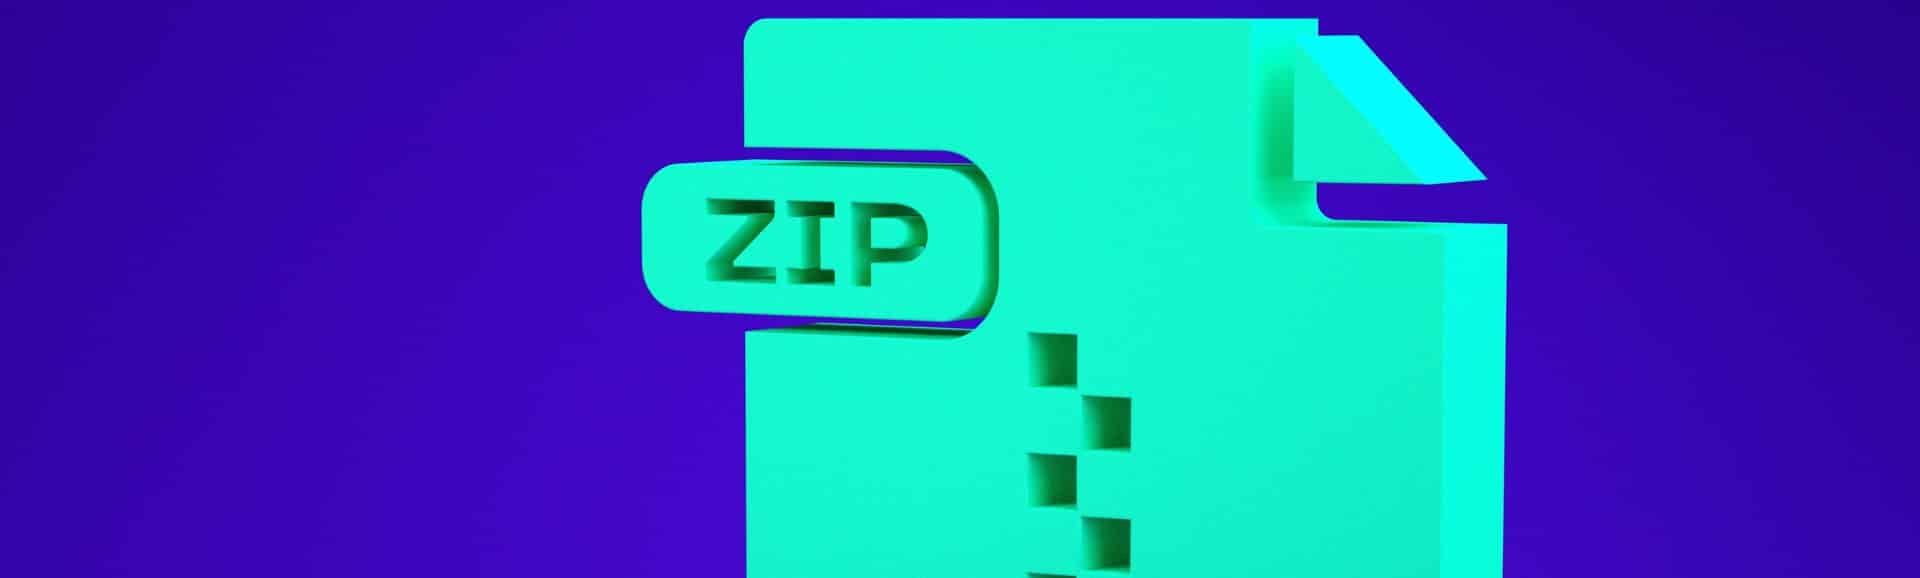 Zip files